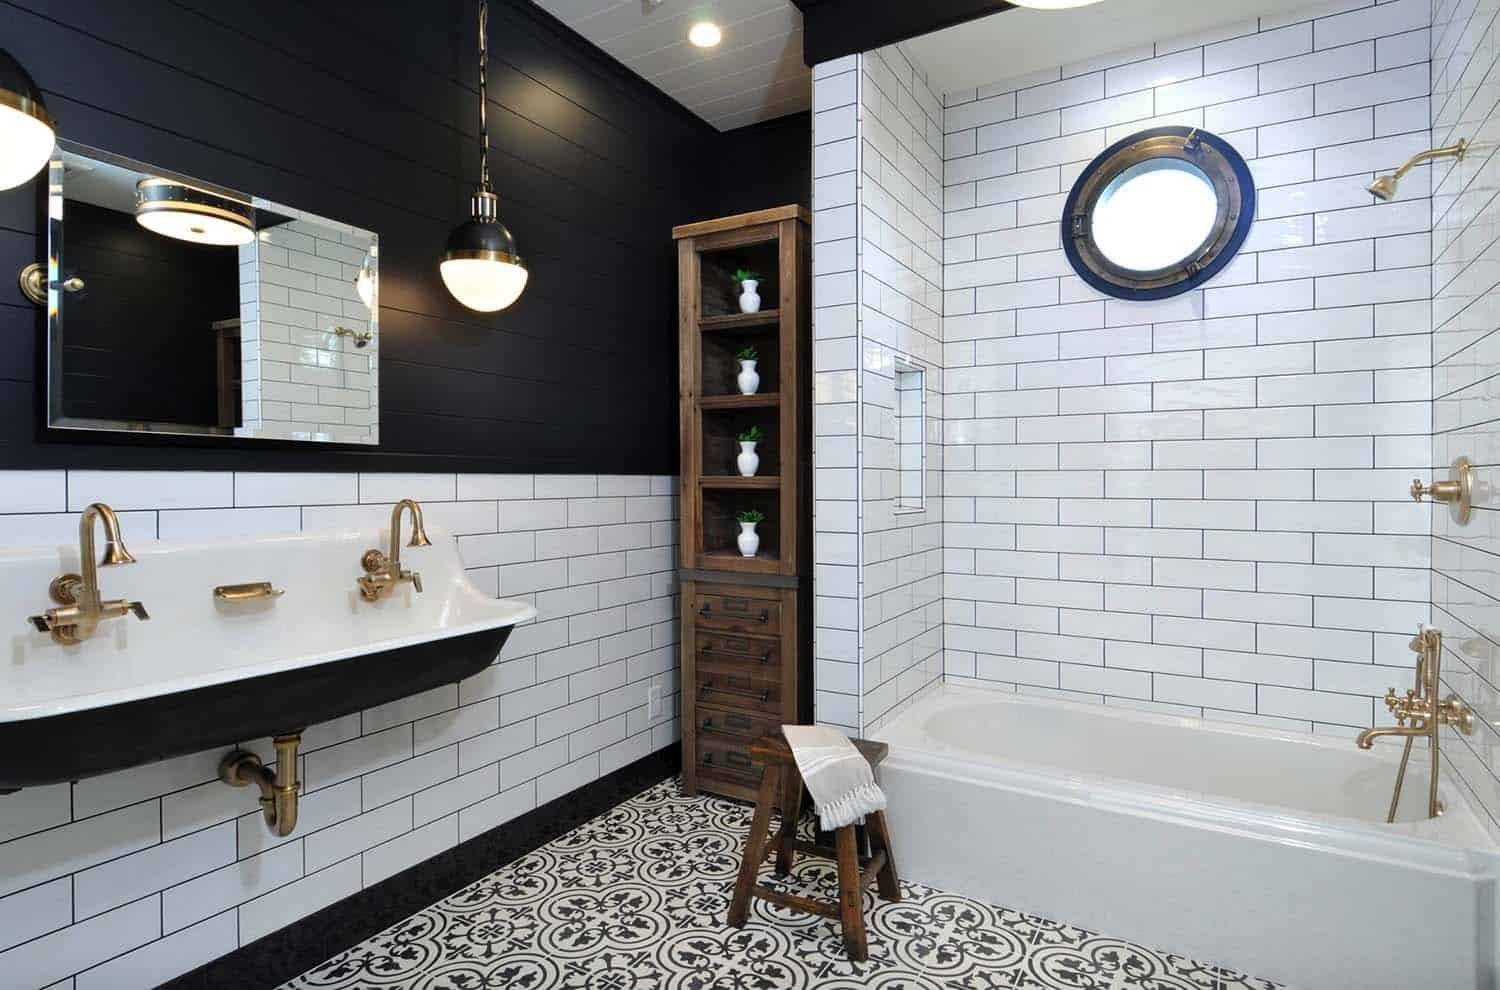 Ванная комната в скандинавском стиле, полезные советы и идеи для усовершенствования ванной вашей мечты.